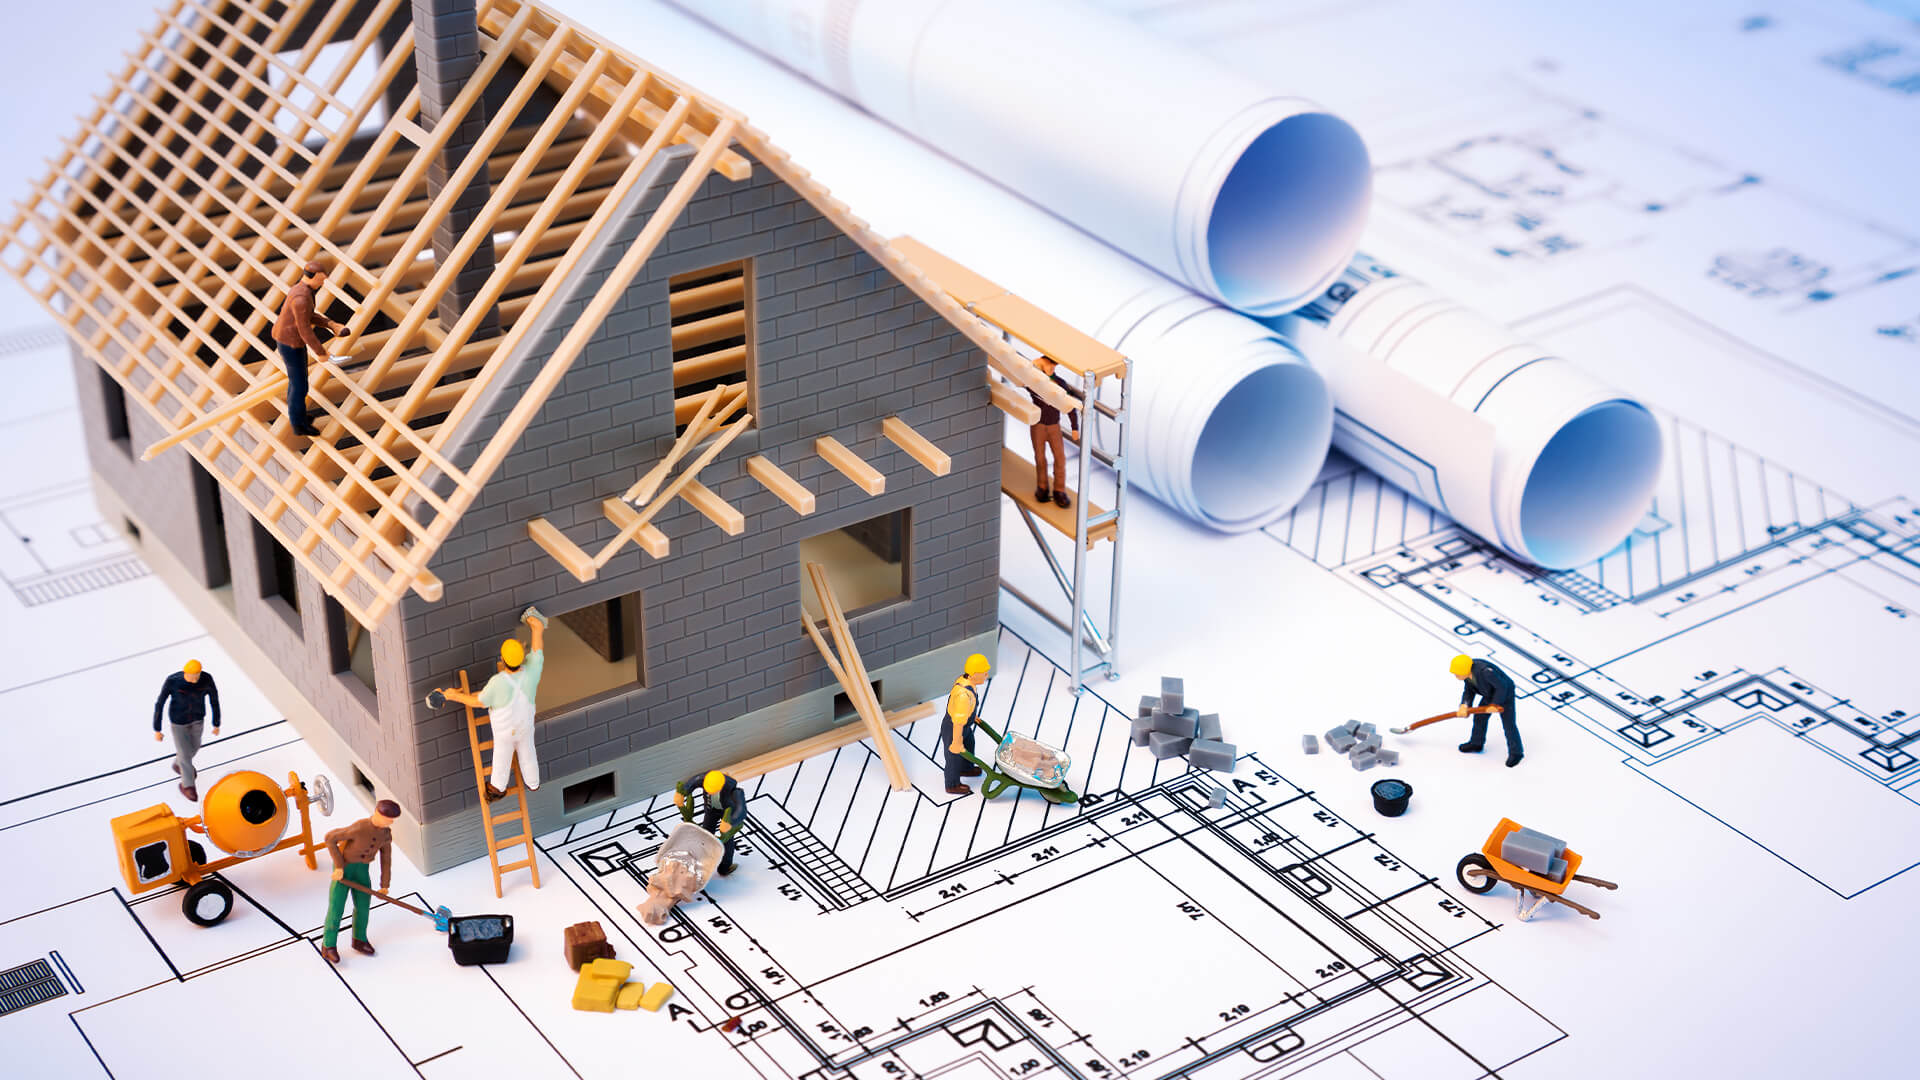 Una guida alla sicurezza nelle costruzioni per i costruttori di case - BUILD Magazine